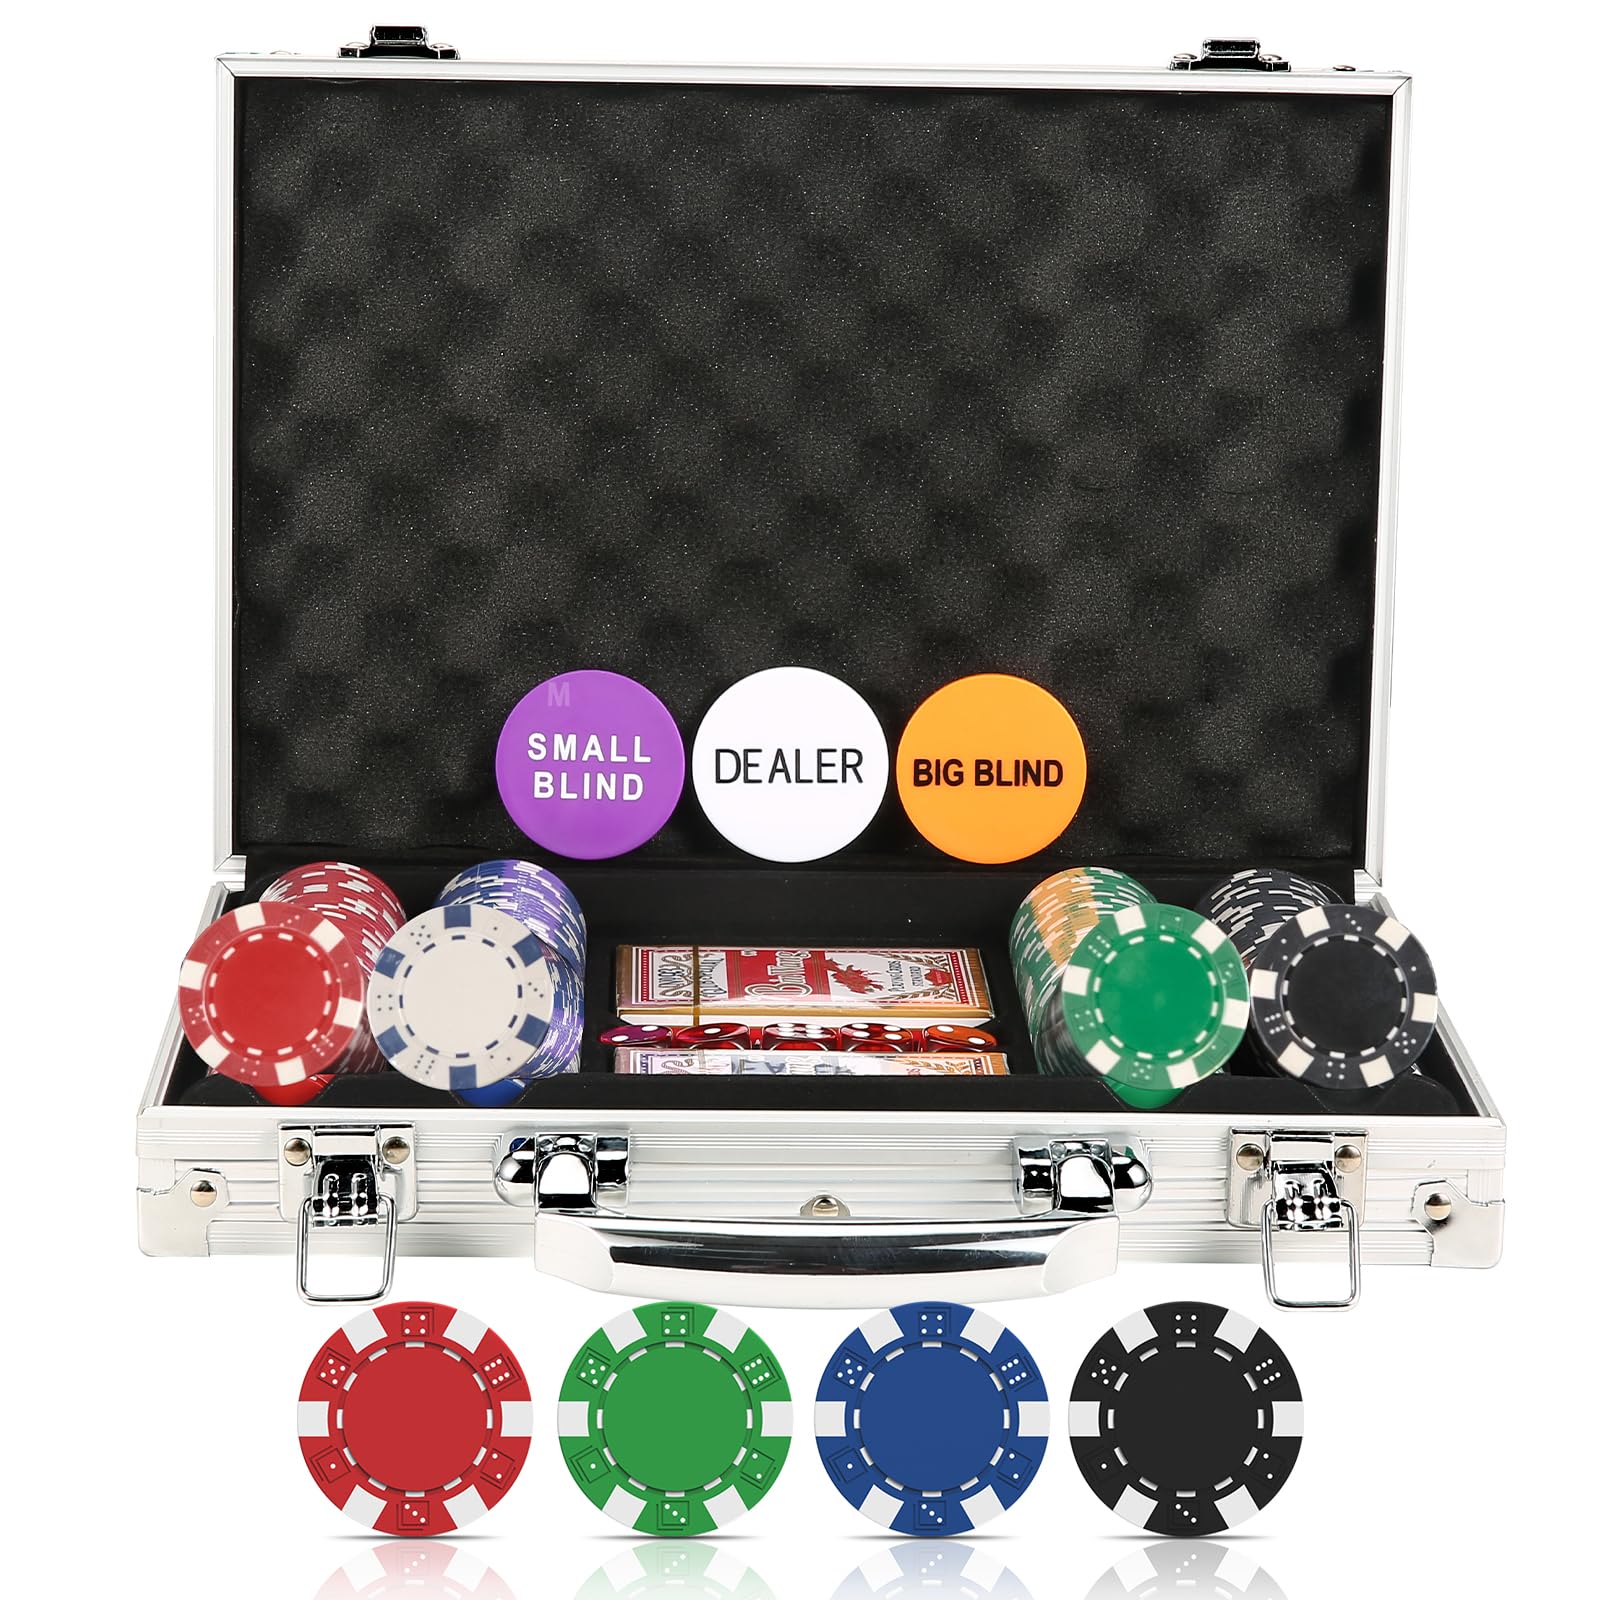 HEITOK Poker Chip Set 200 PCS for Beginners, Casino Poker Chips with Aluminum Case, 11.5 Gram Chips with Iron Insert for Texas Hold'em Blackjack Gambling